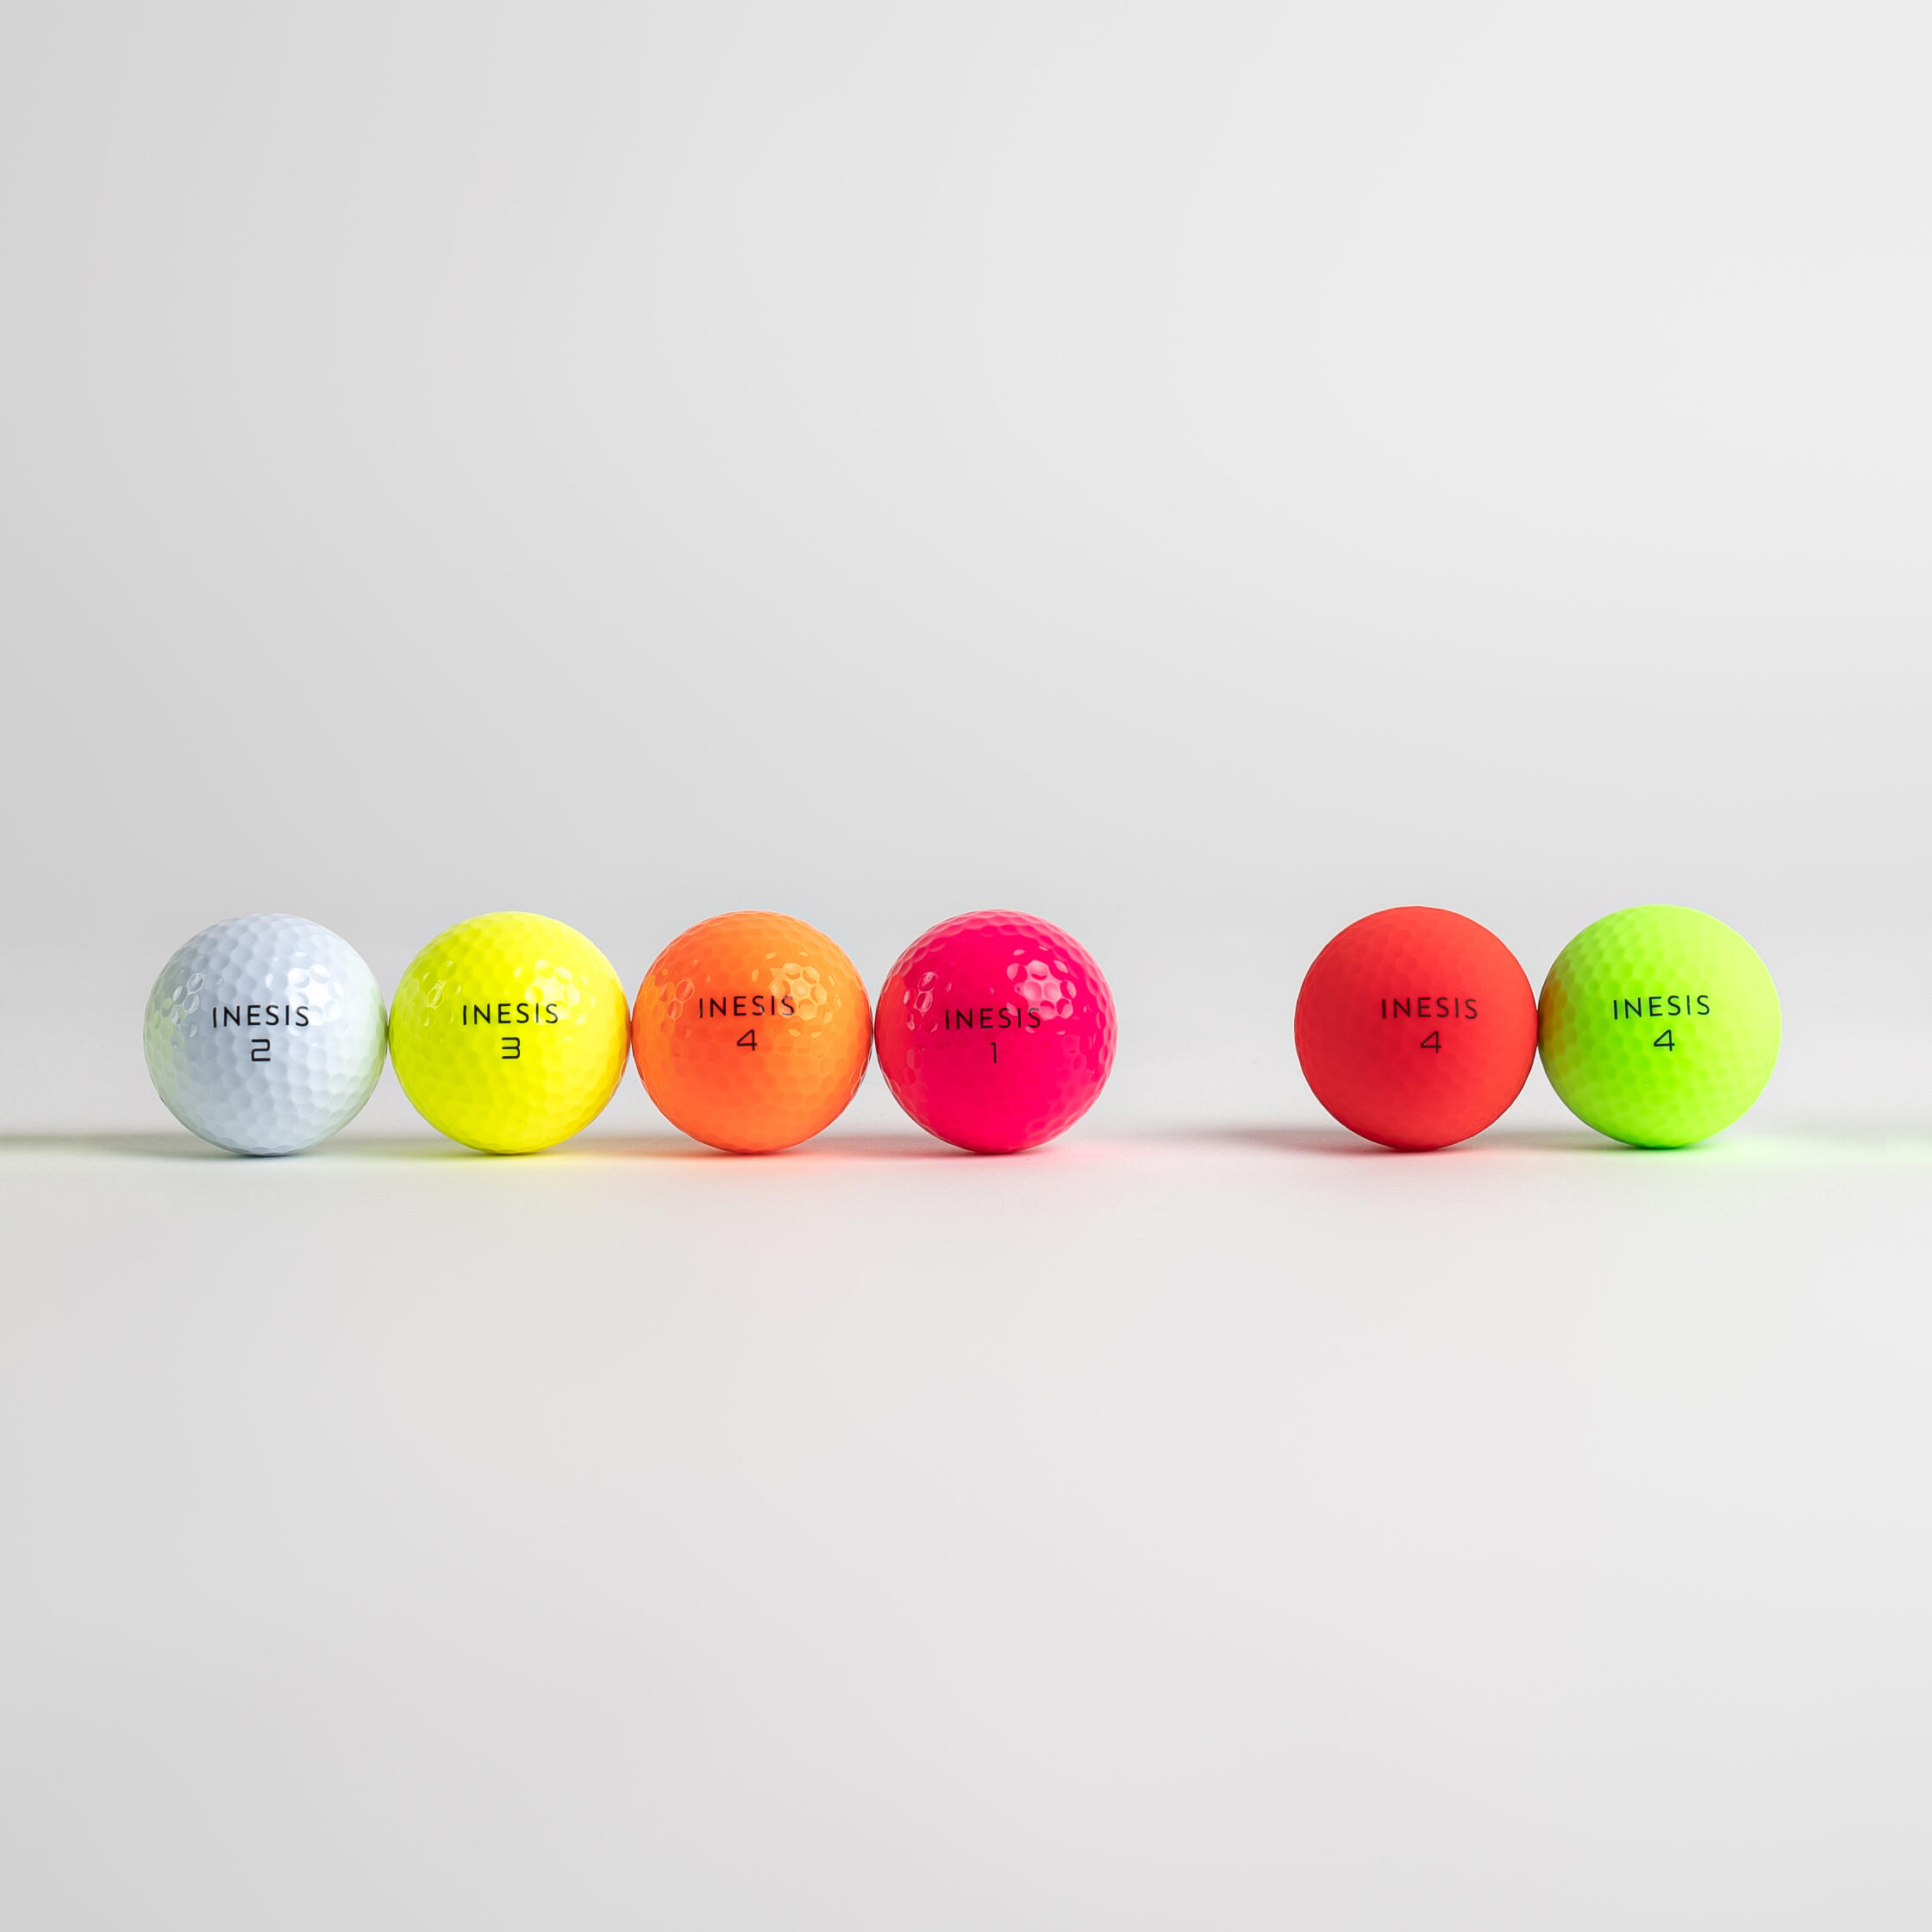 Golf Balls x12 - Inesis Soft 500 Yellow - INESIS